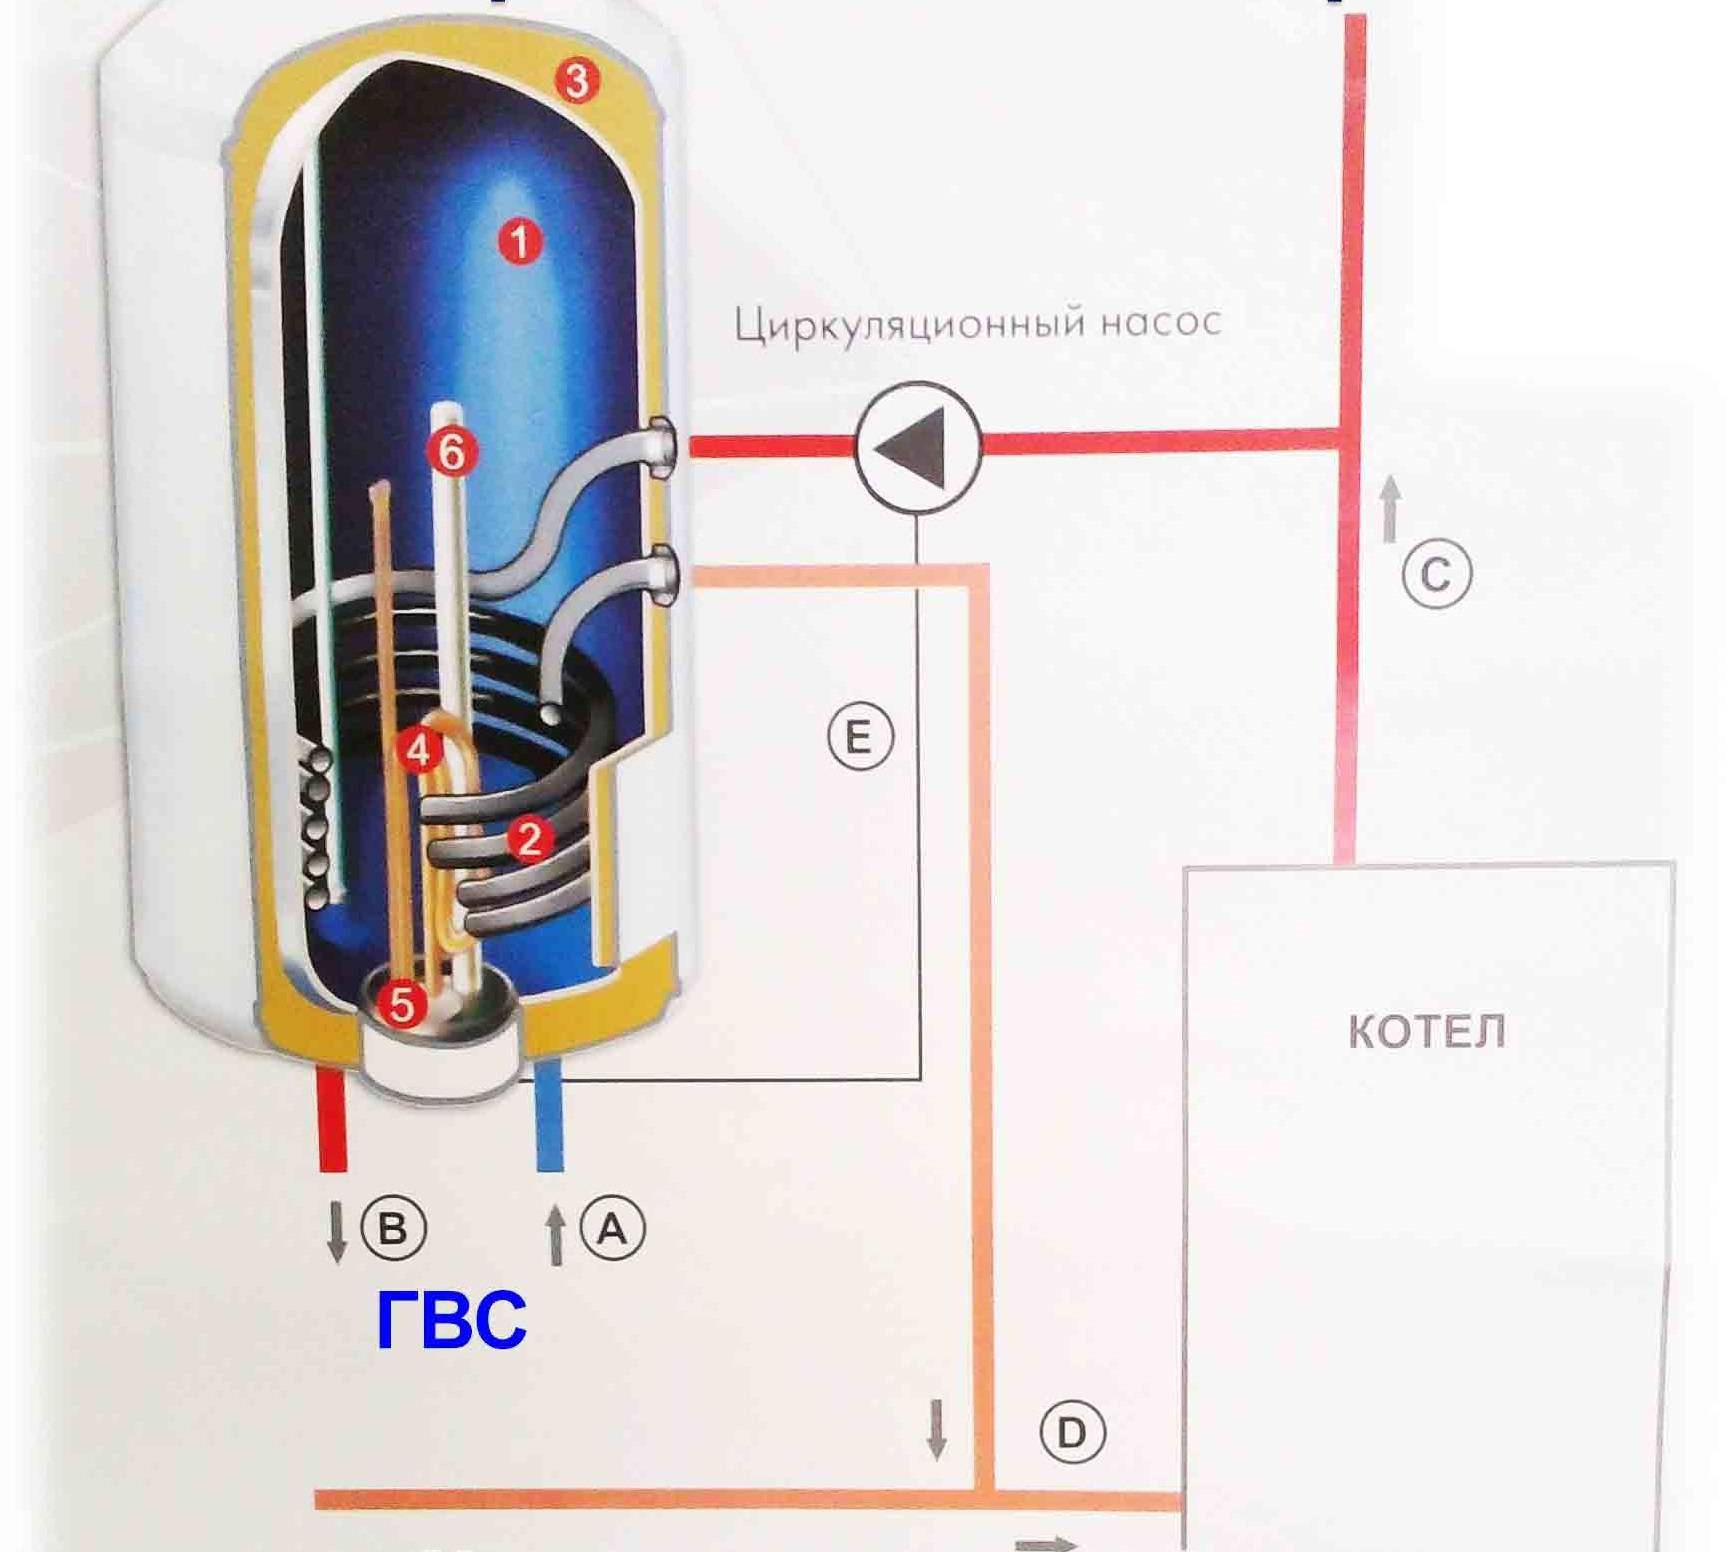 Как подключить водонагреватель к электричеству — ошибки, выбор кабеля, розетки, автоматов.